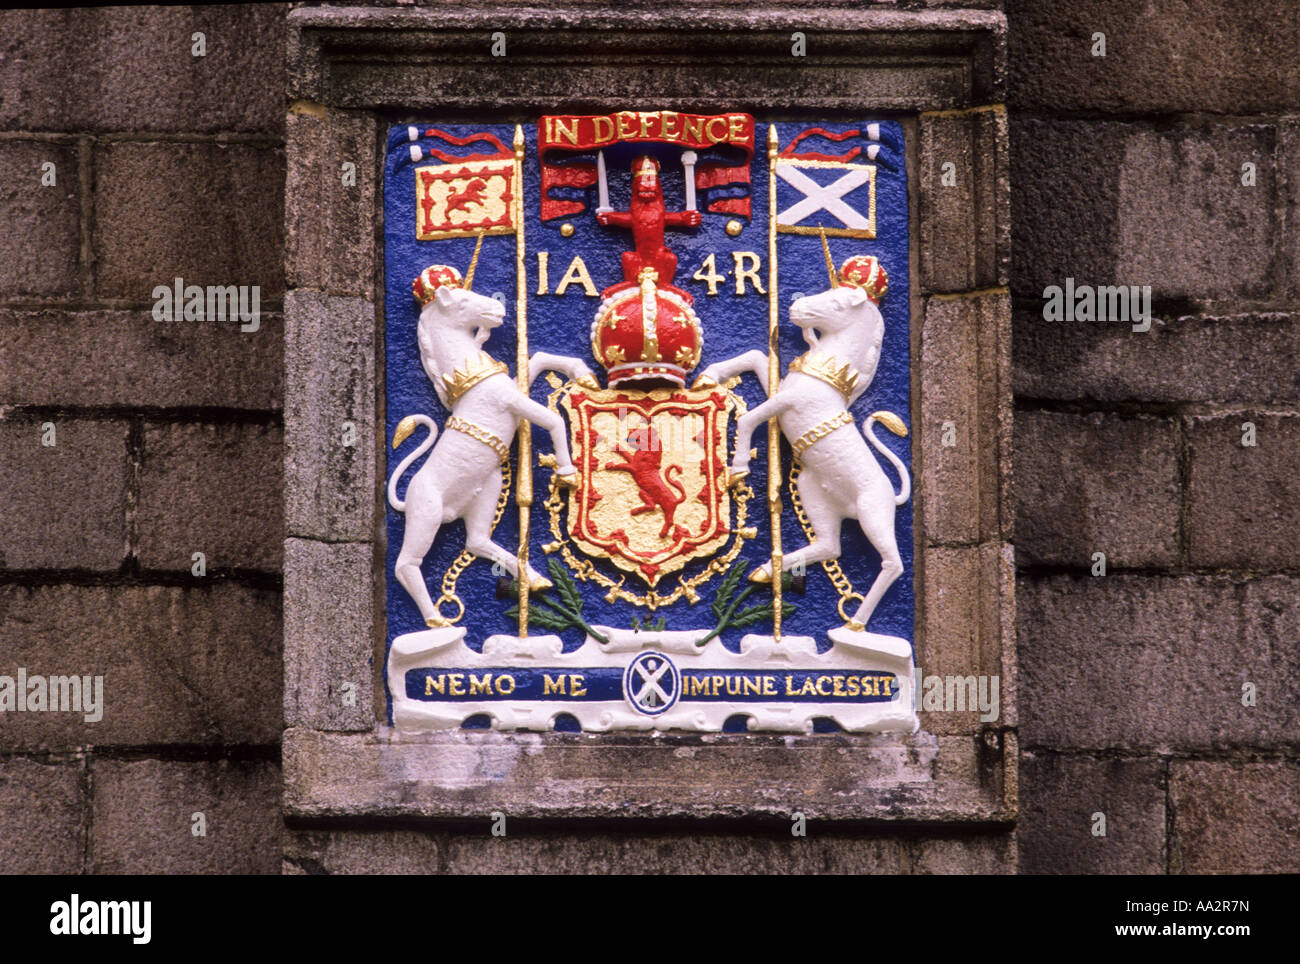 Old Aberdeen, Kings College, armoiries du roi Jacques 4e, dans l'Aberdeenshire, histoire, drapeaux écossais, les lions effrénés, royal, Ecosse, Royaume-Uni Banque D'Images